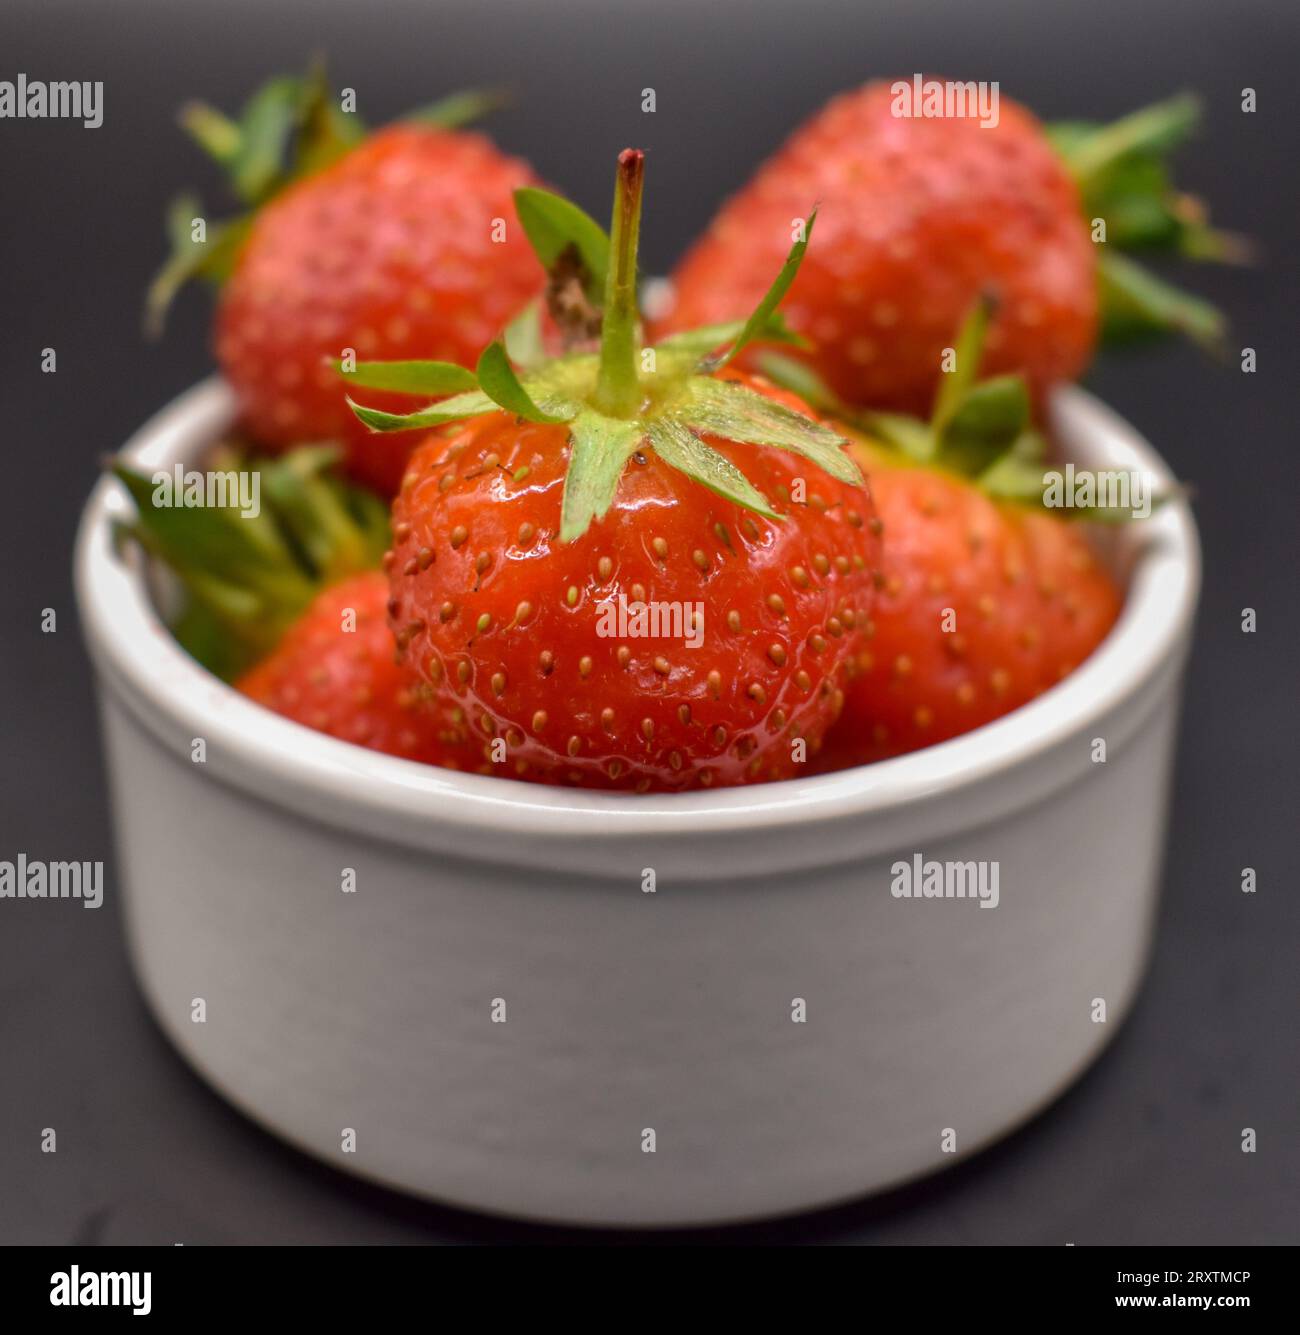 Un petit bol blanc contenant des fraises rouges juteuses photographiées sur un fond sombre. Banque D'Images